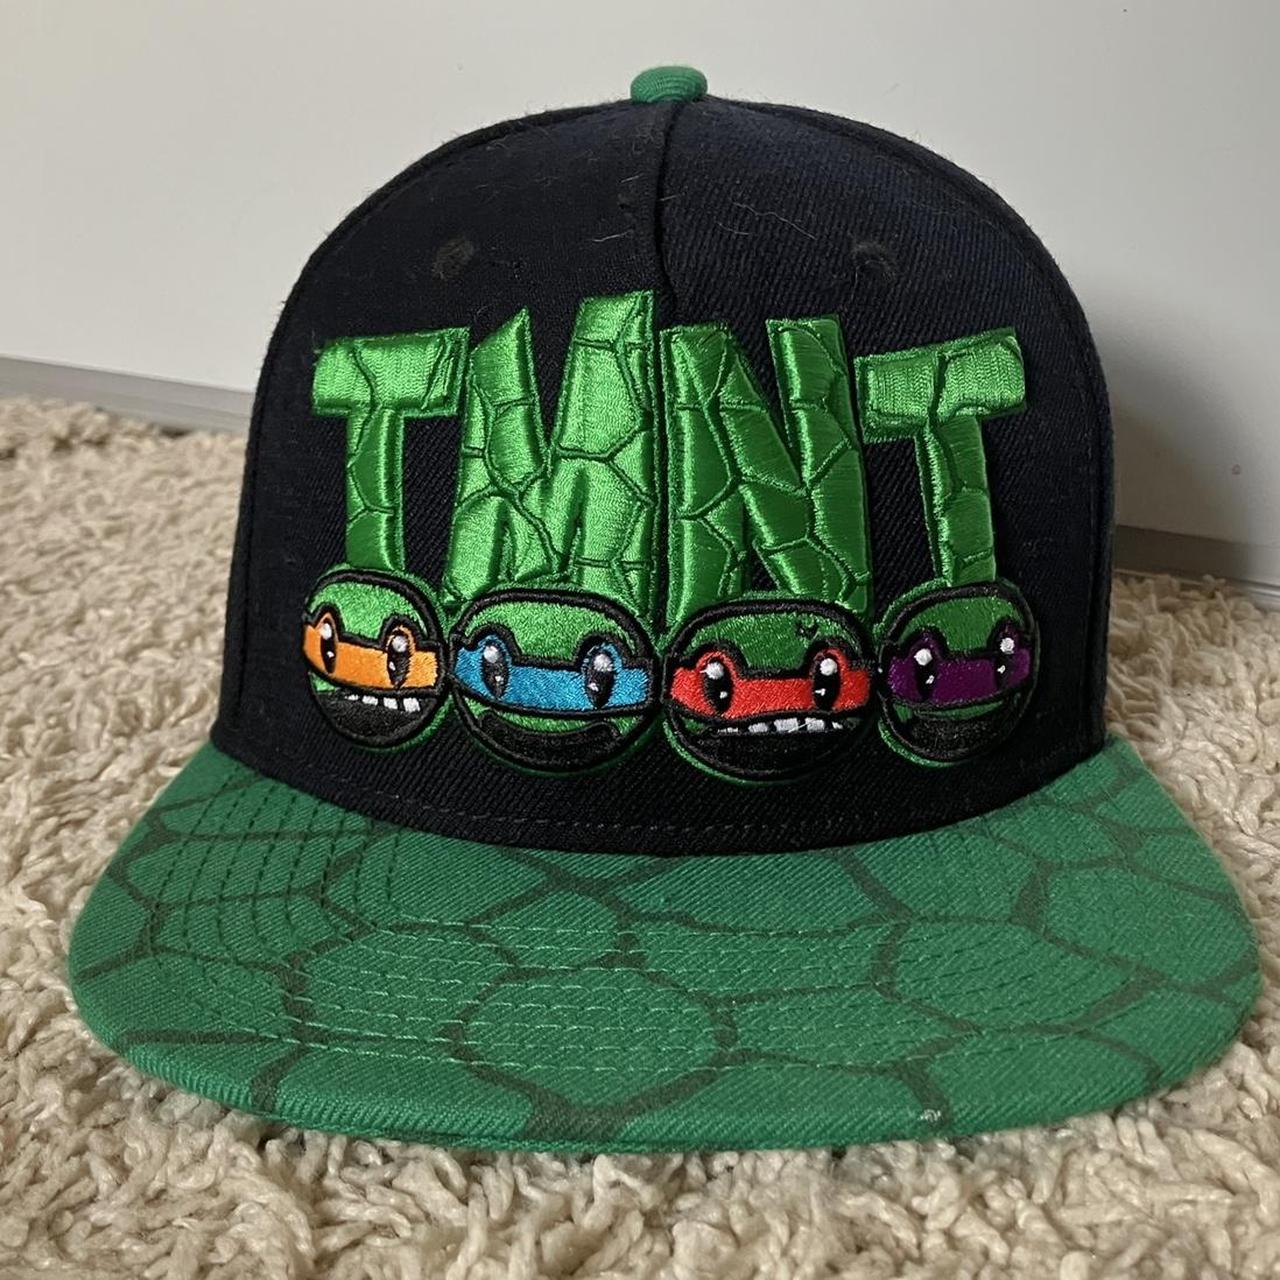 Teenage Mutant Ninja Turtles Snapback Hat, Black - New